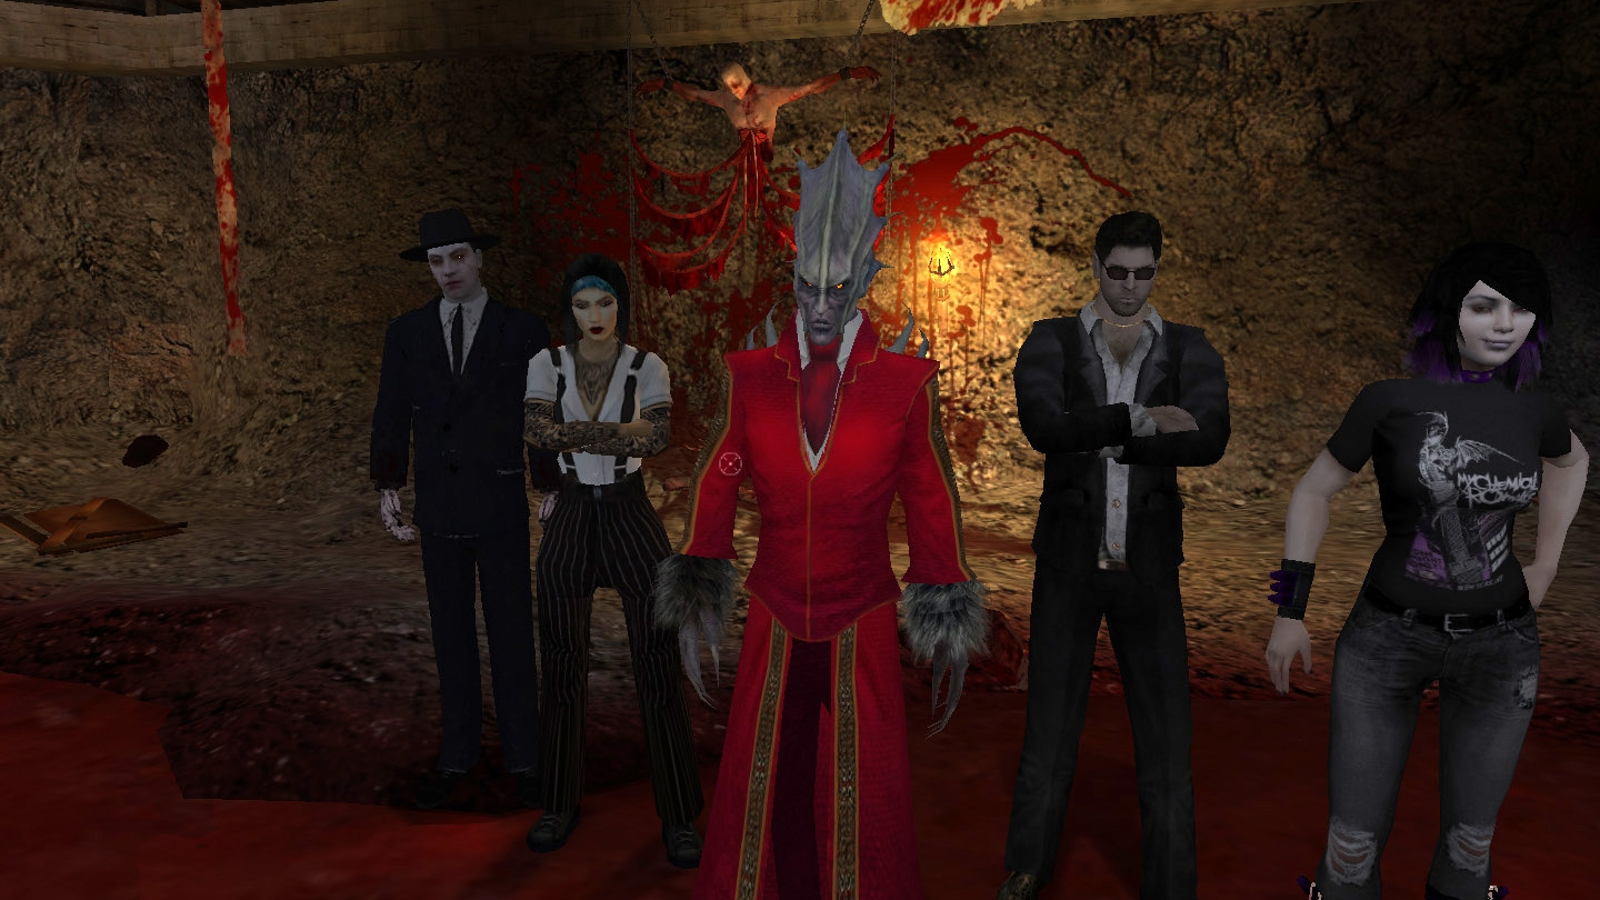 Vampire Bloodlines Clan Quest Sabbat